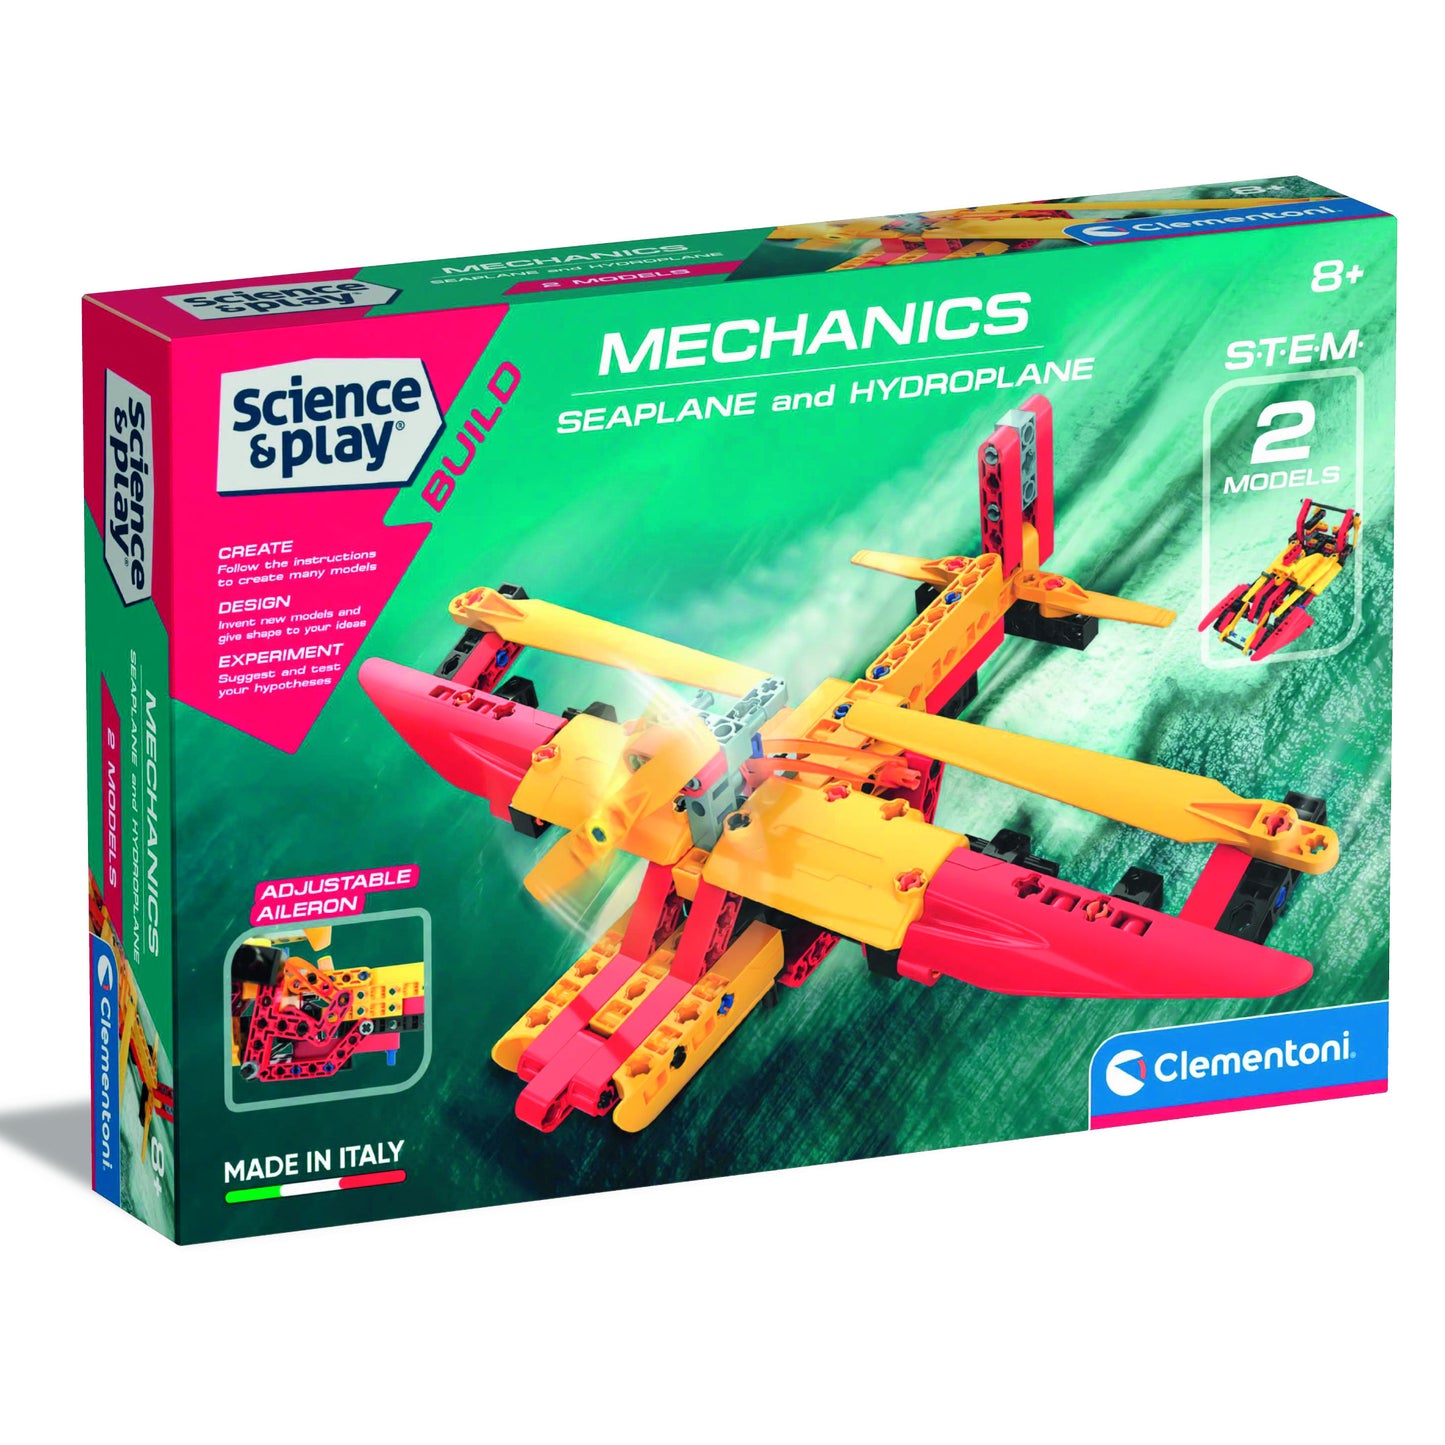 Clementoni Mechanics Laboratory Seaplane & Hydroplane